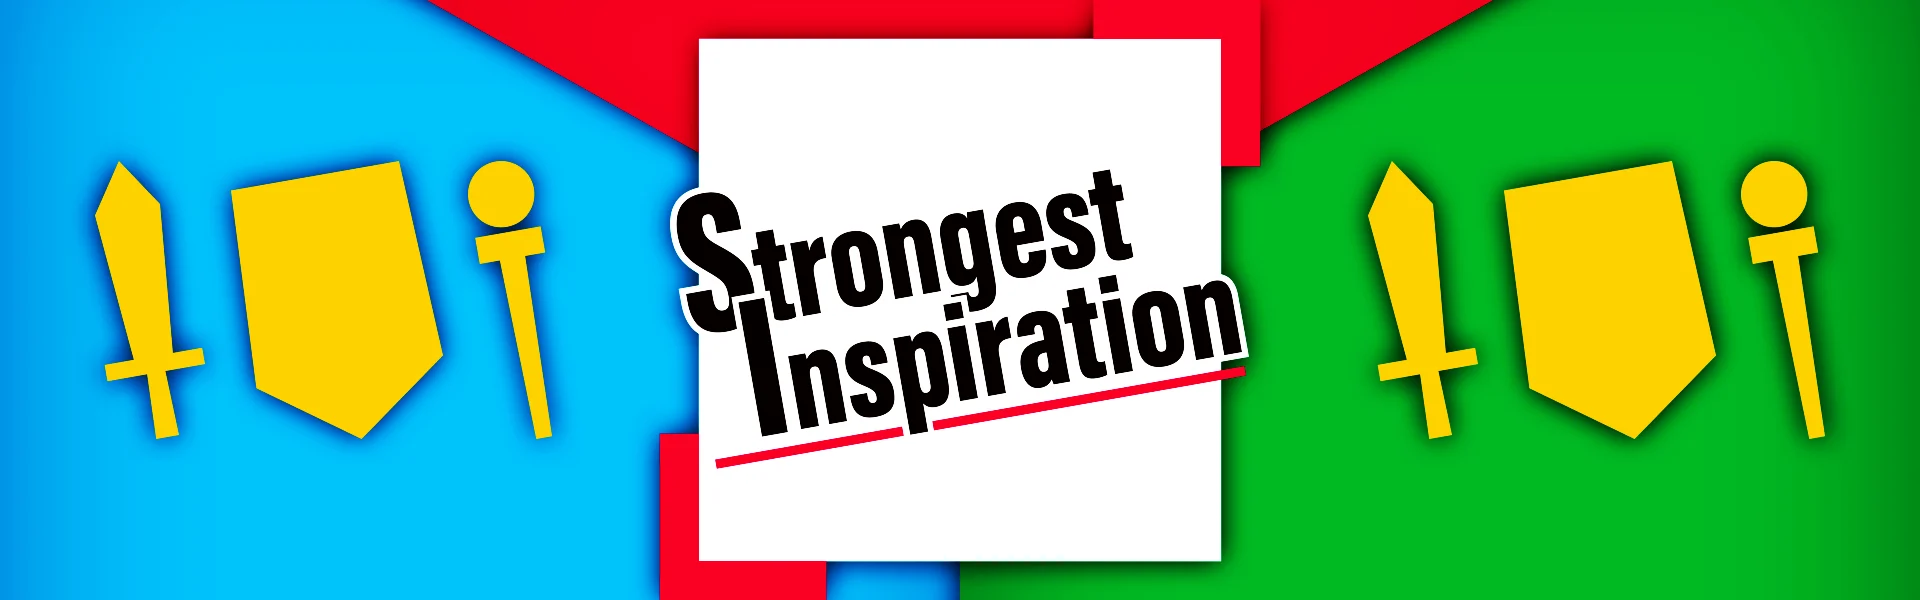 総合コンテンツサイト「竜平堂 (西野竜平)」の対戦カードゲーム「Strongest Inspiration」のバナー画像